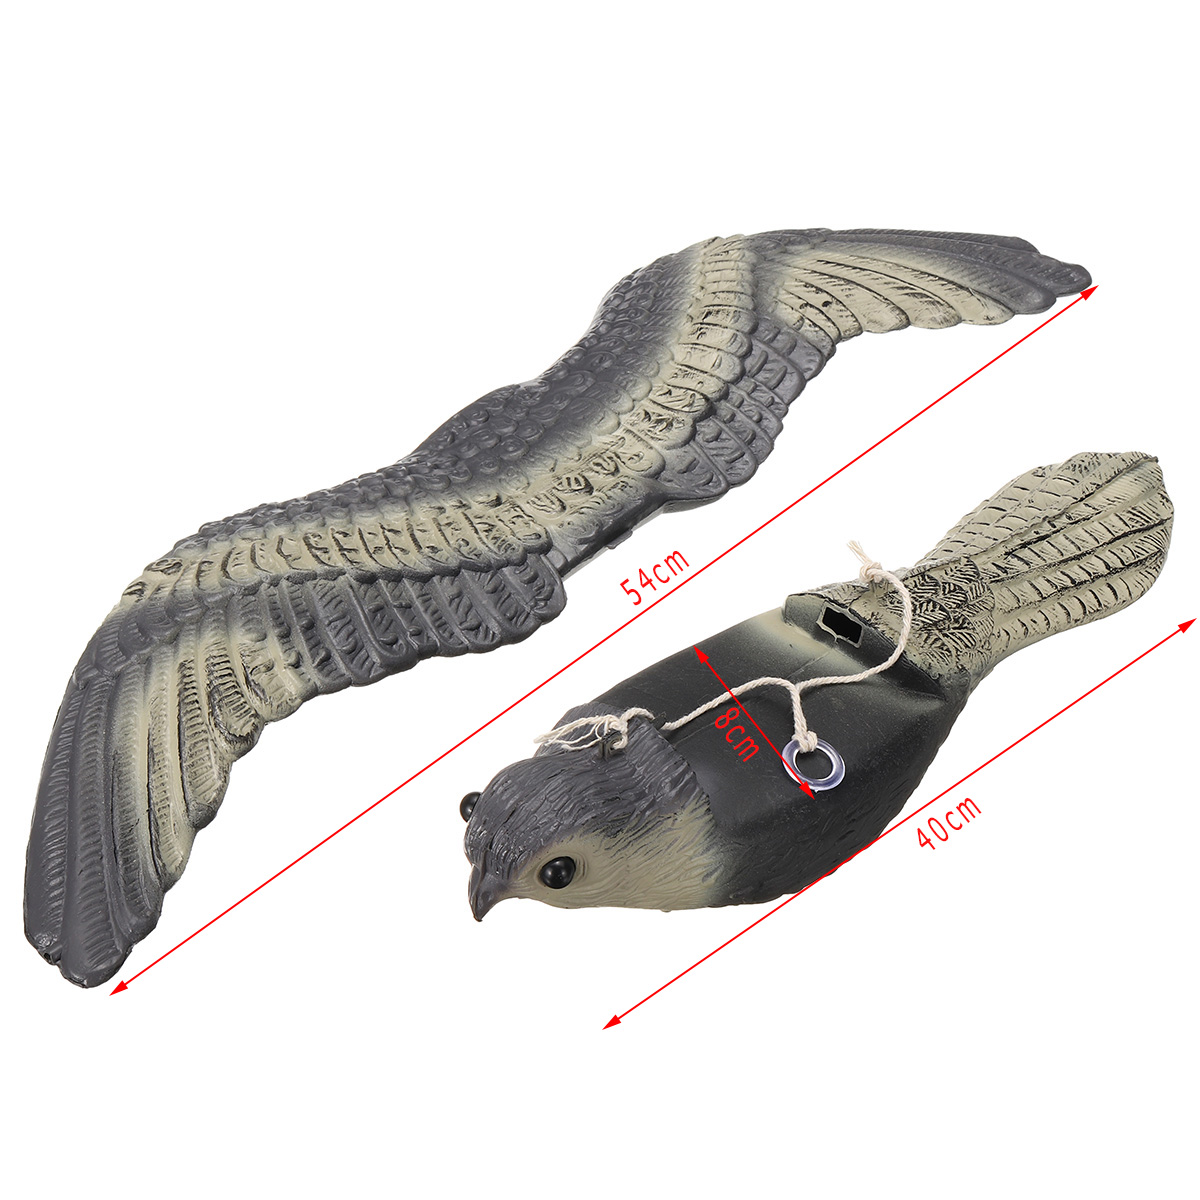 Falcon-Hawk-Hunting-Decoy-Bird-Deterrent-Scarer-Outdoor-Garden-Hunting-Equipment-1556624-2